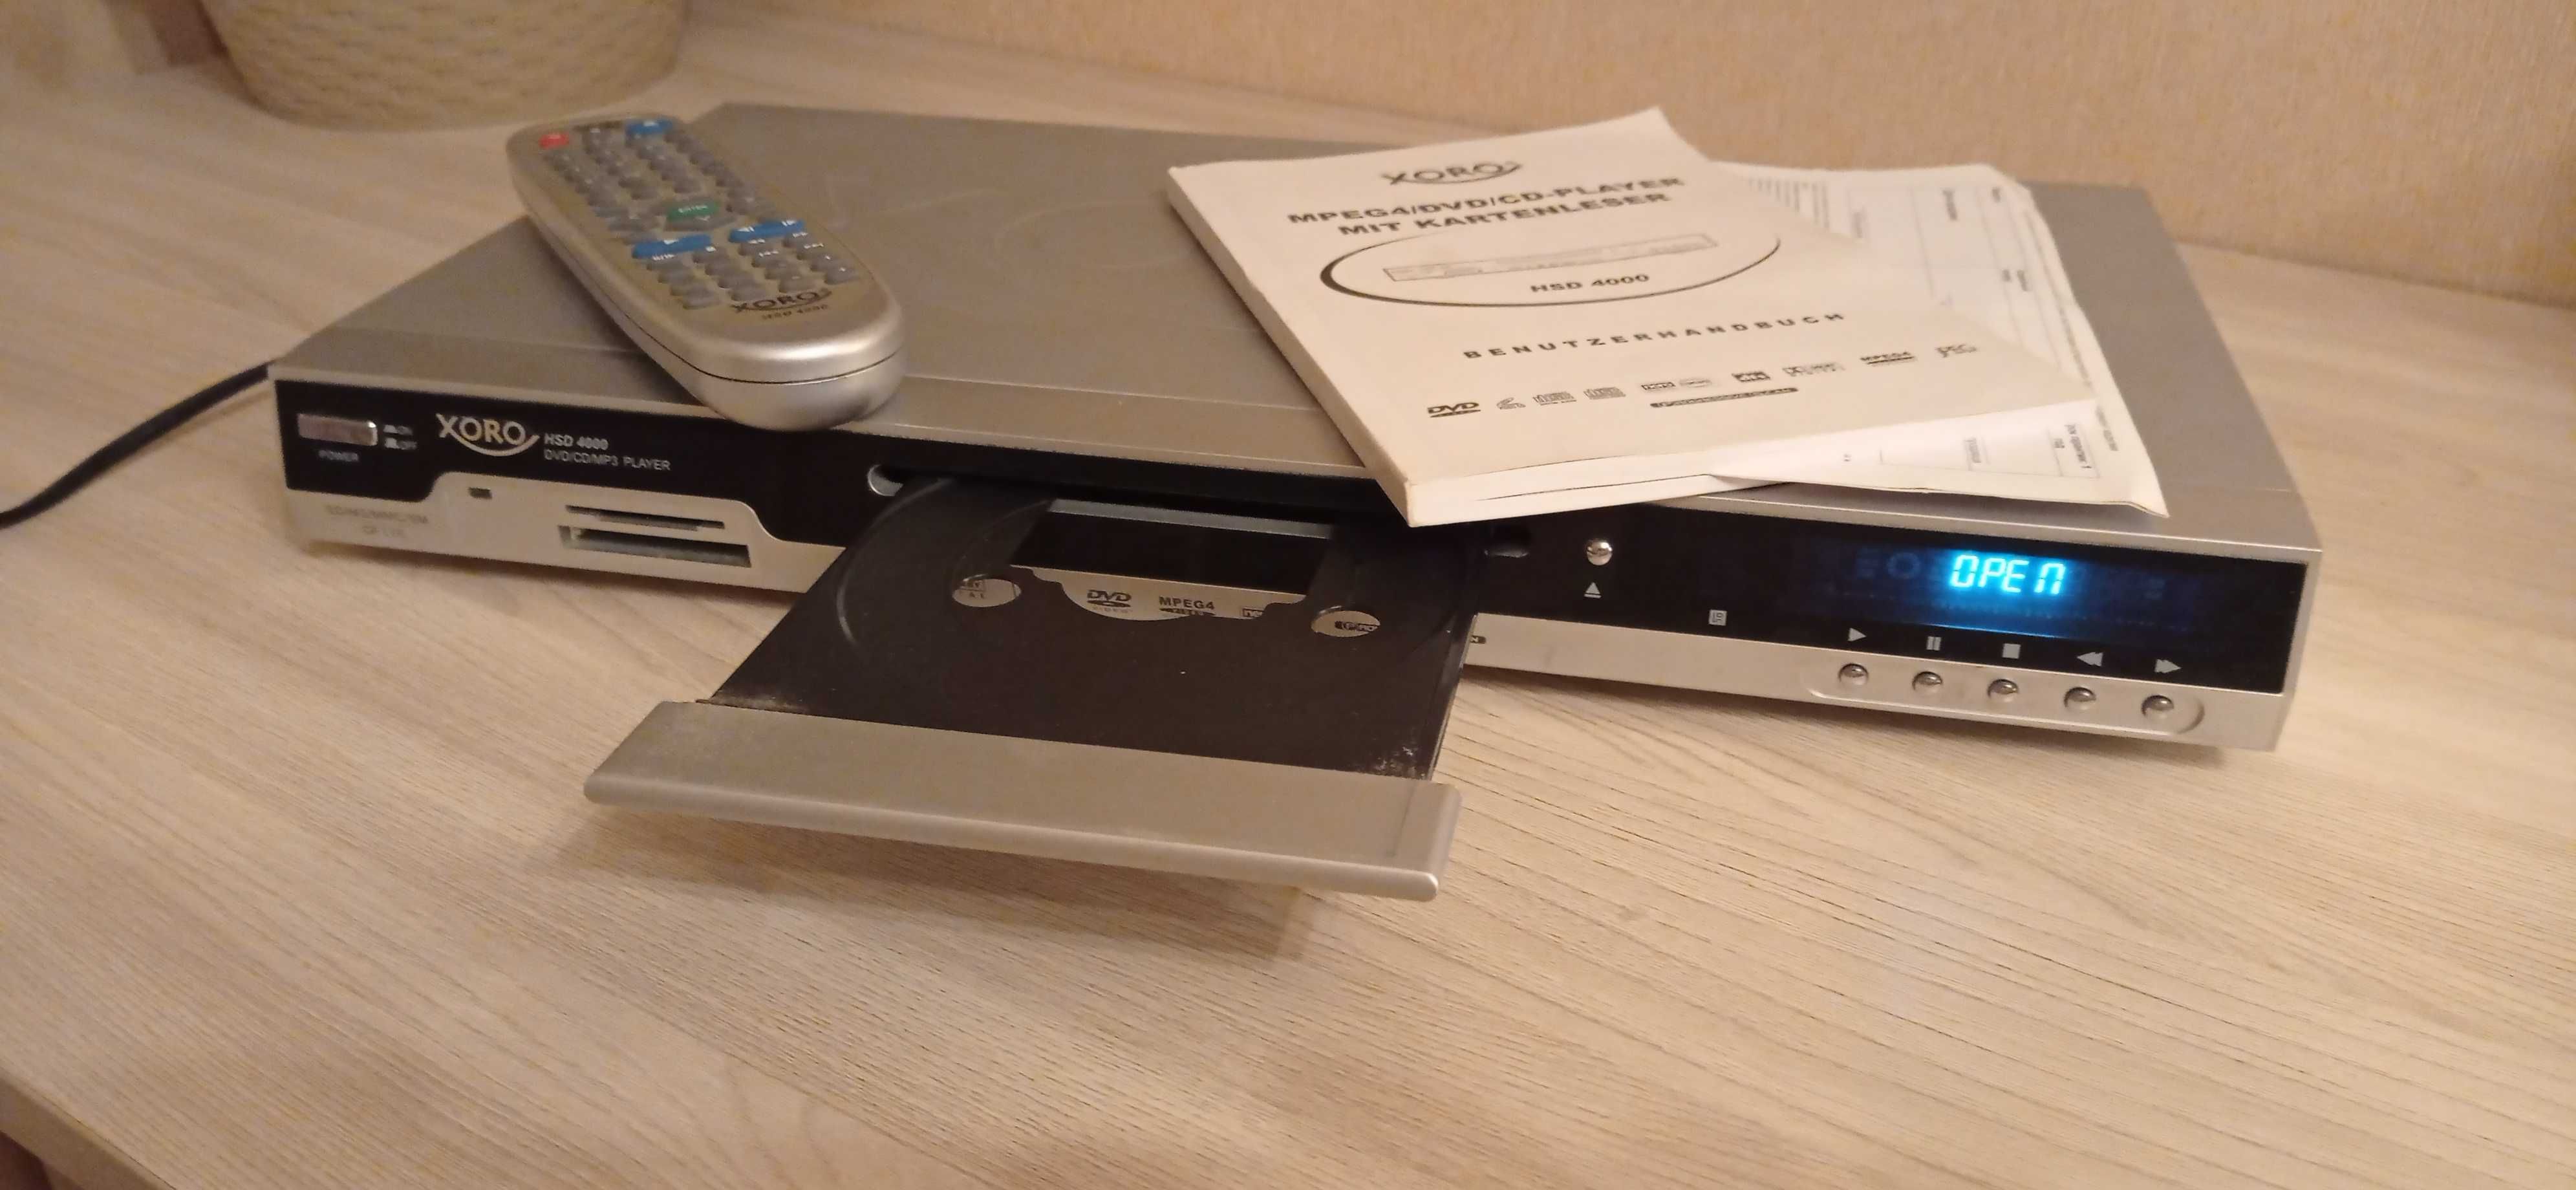 DVD програвач XORO HSD 4000 зі слотом для карти памяті